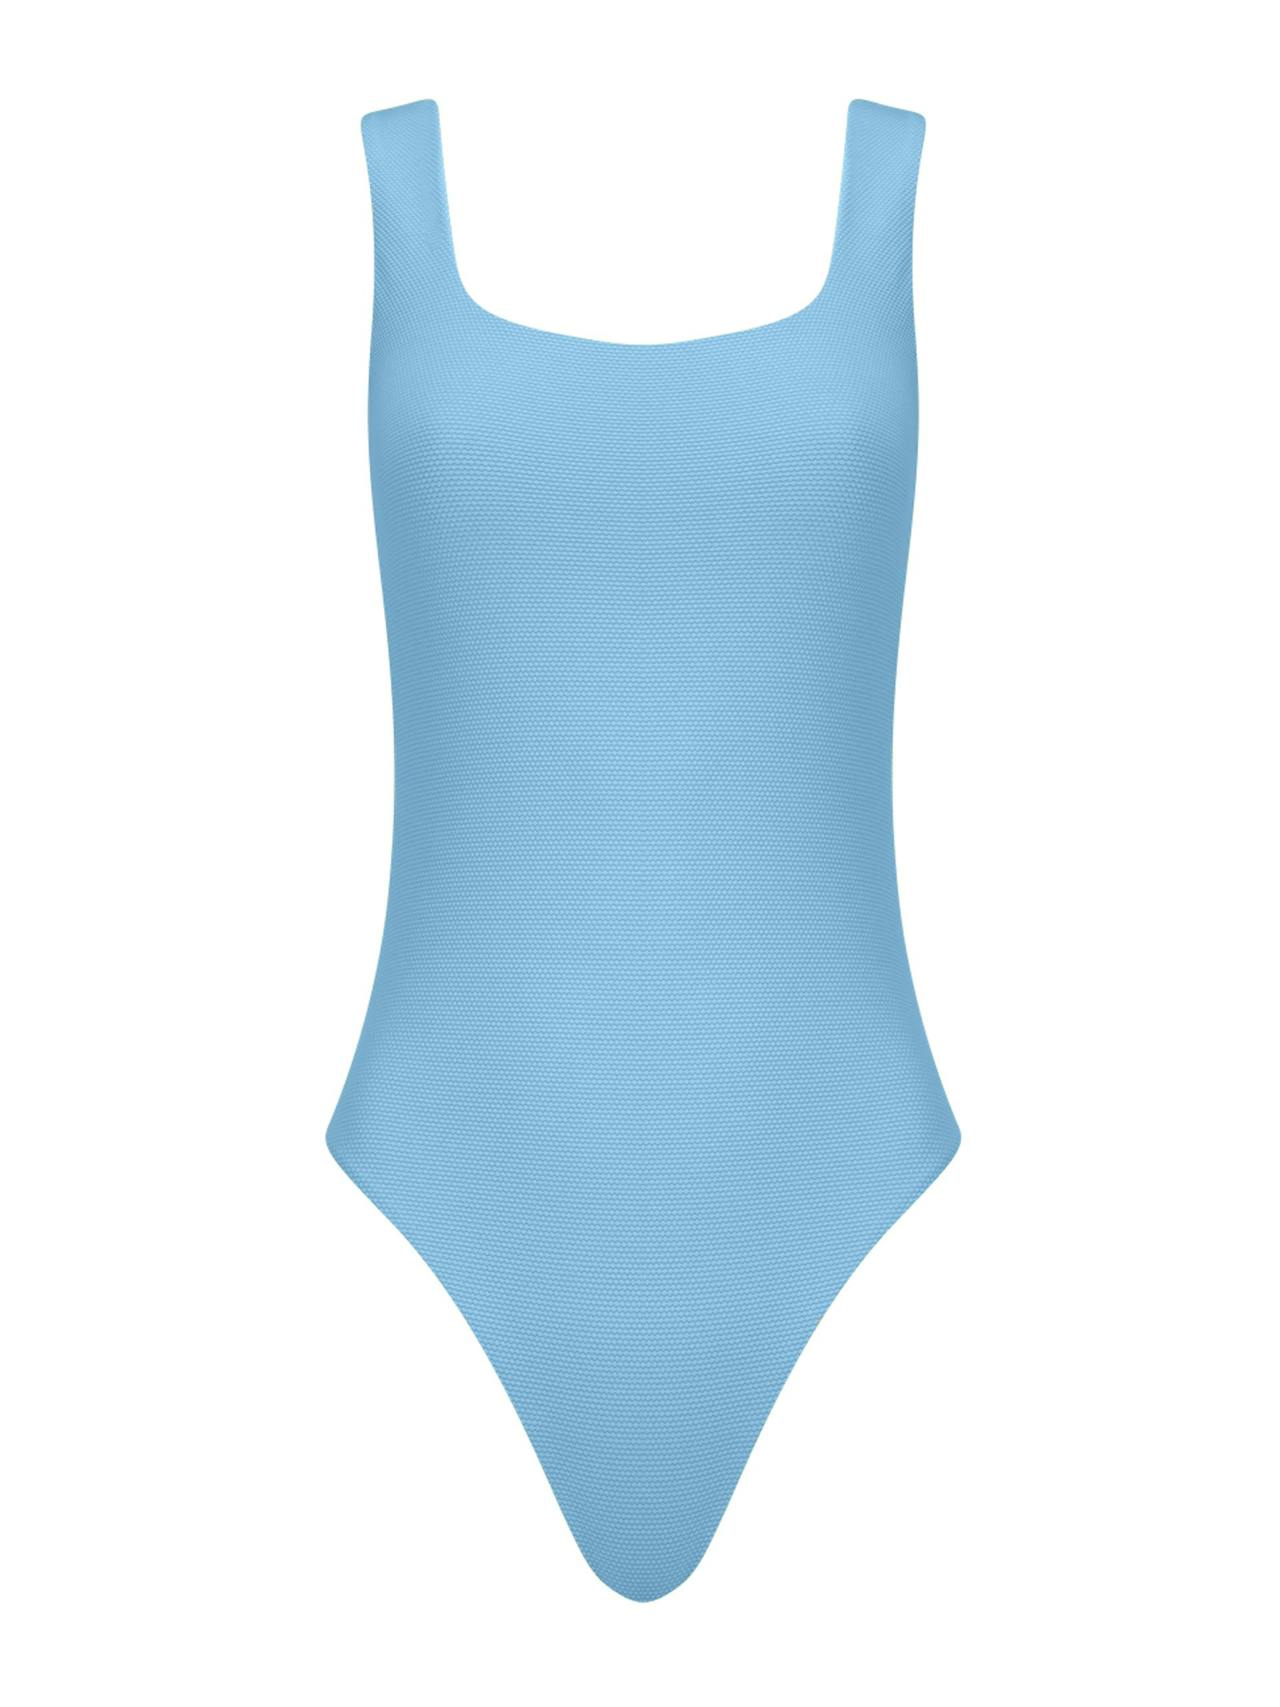 The Poppy (high leg) swimsuit in summer blue